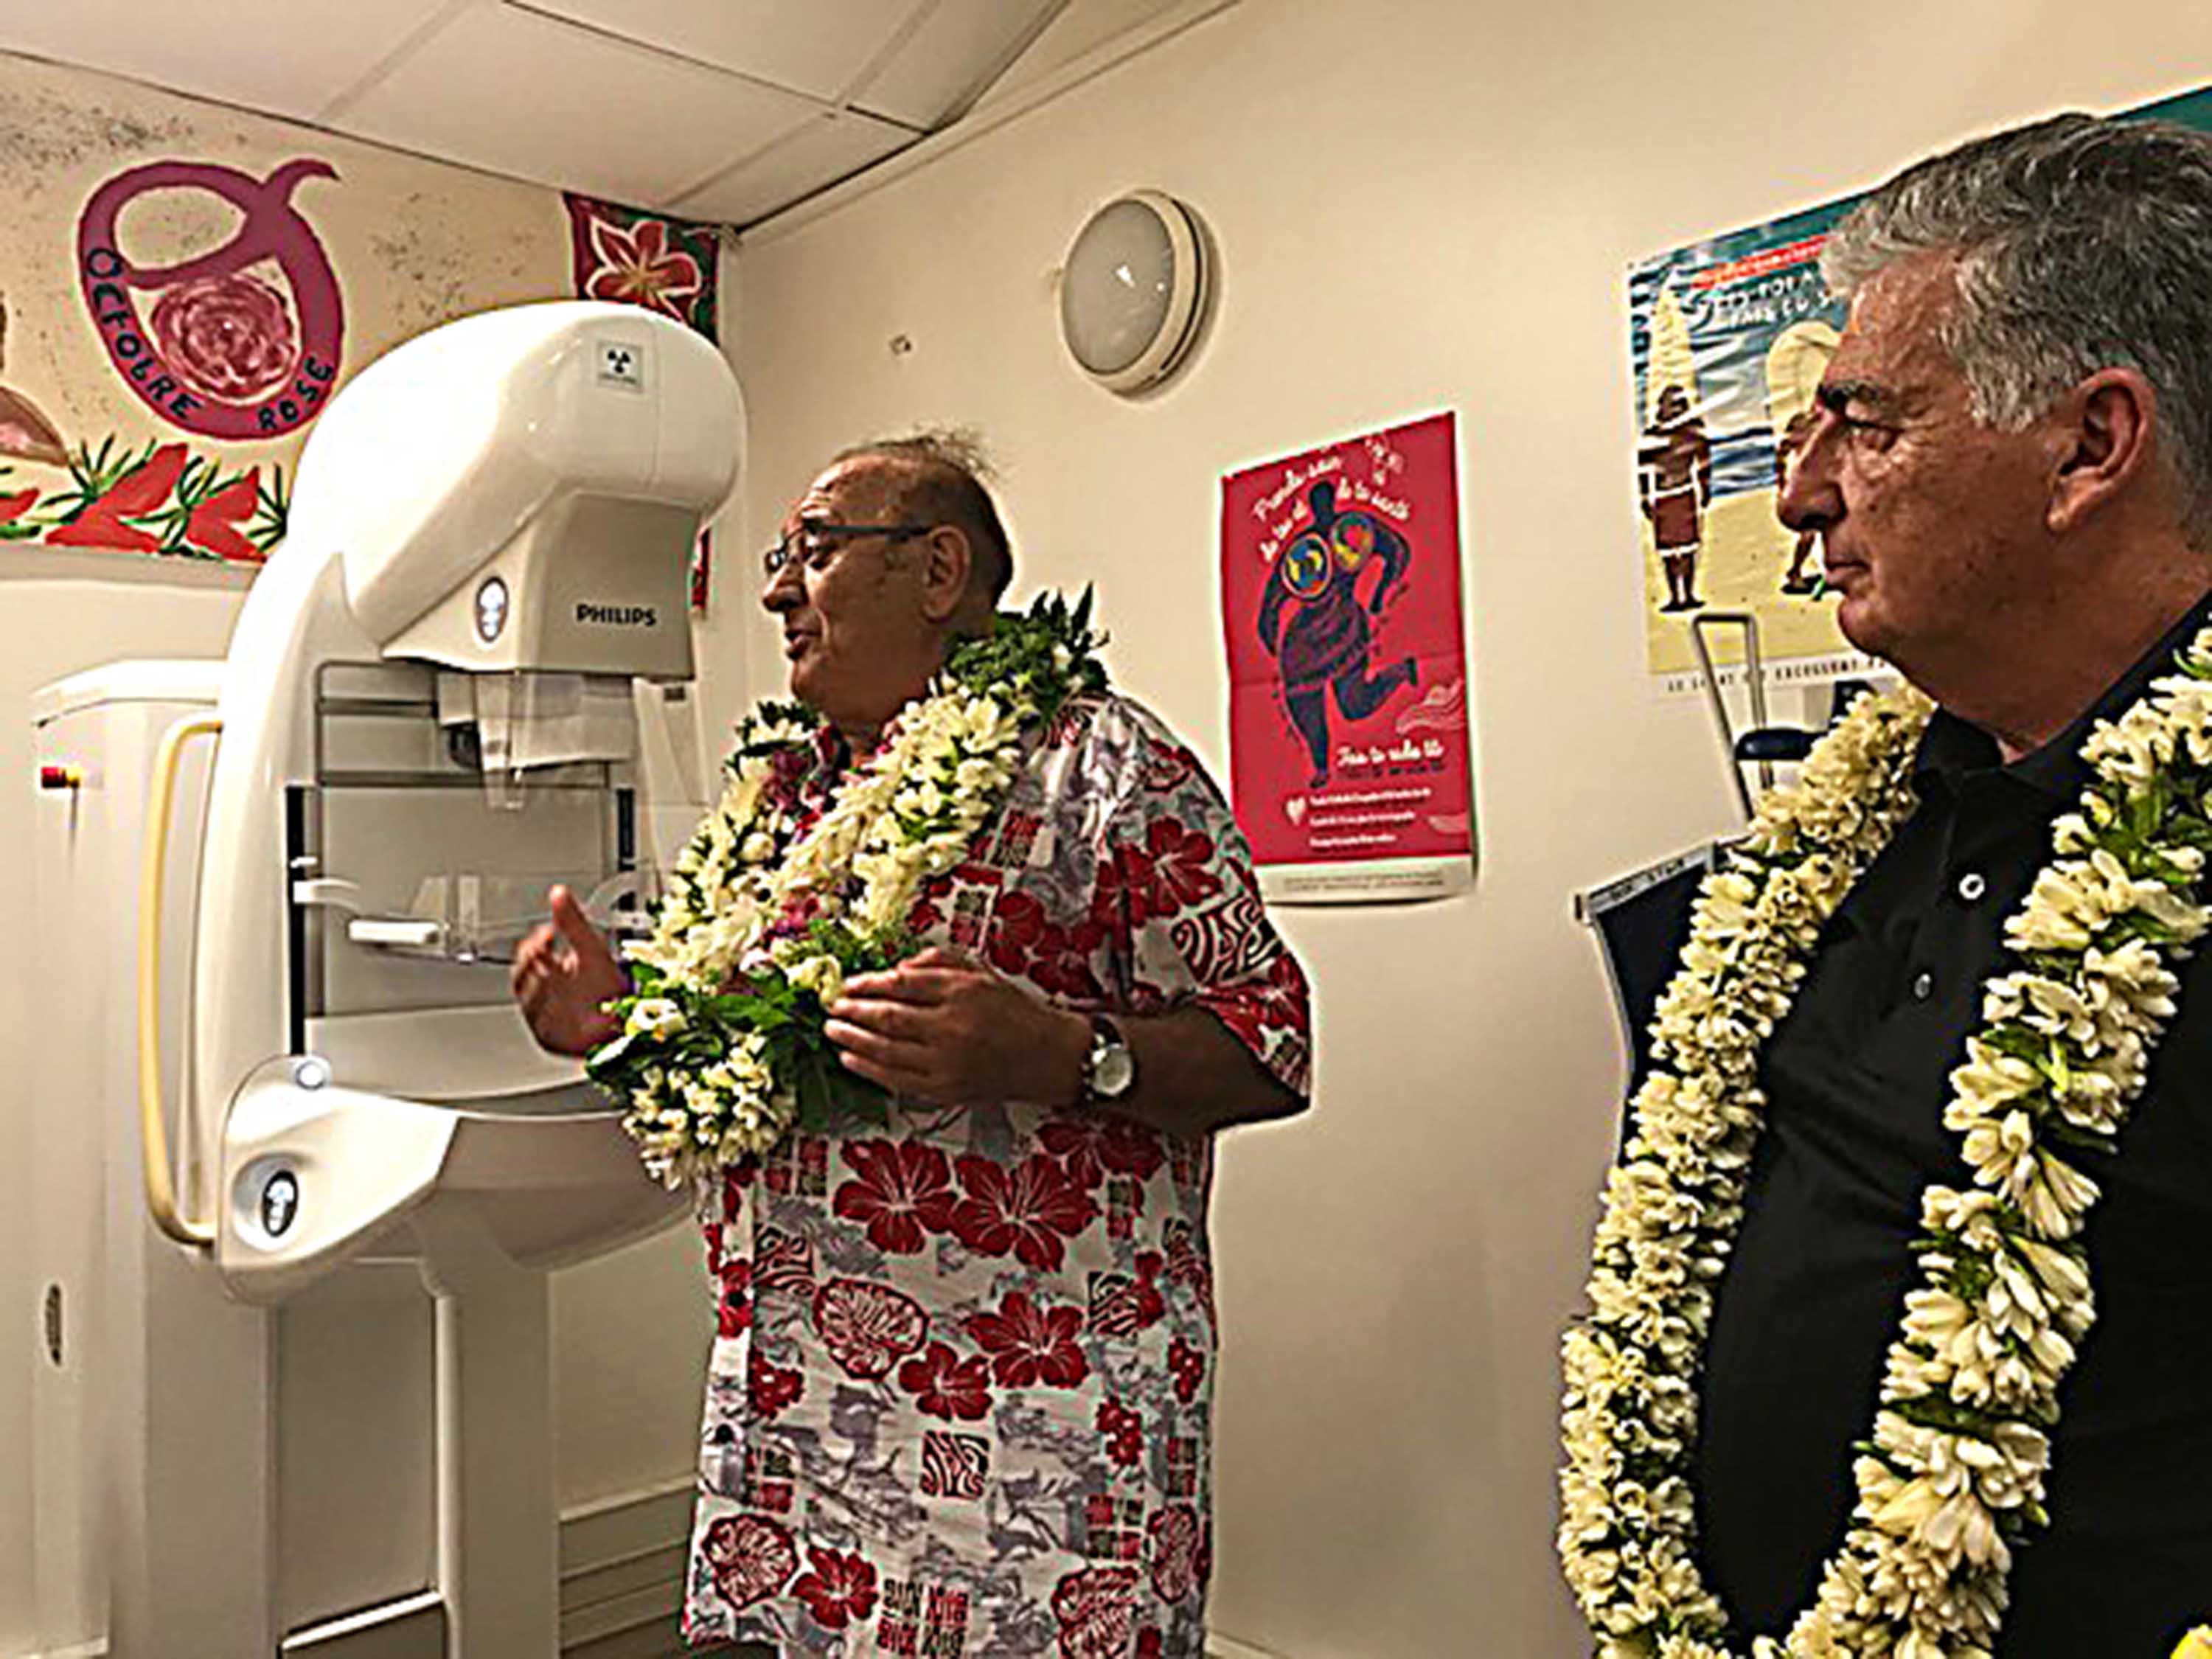 Un mammographe inauguré à l'hôpital de Nuku Hiva